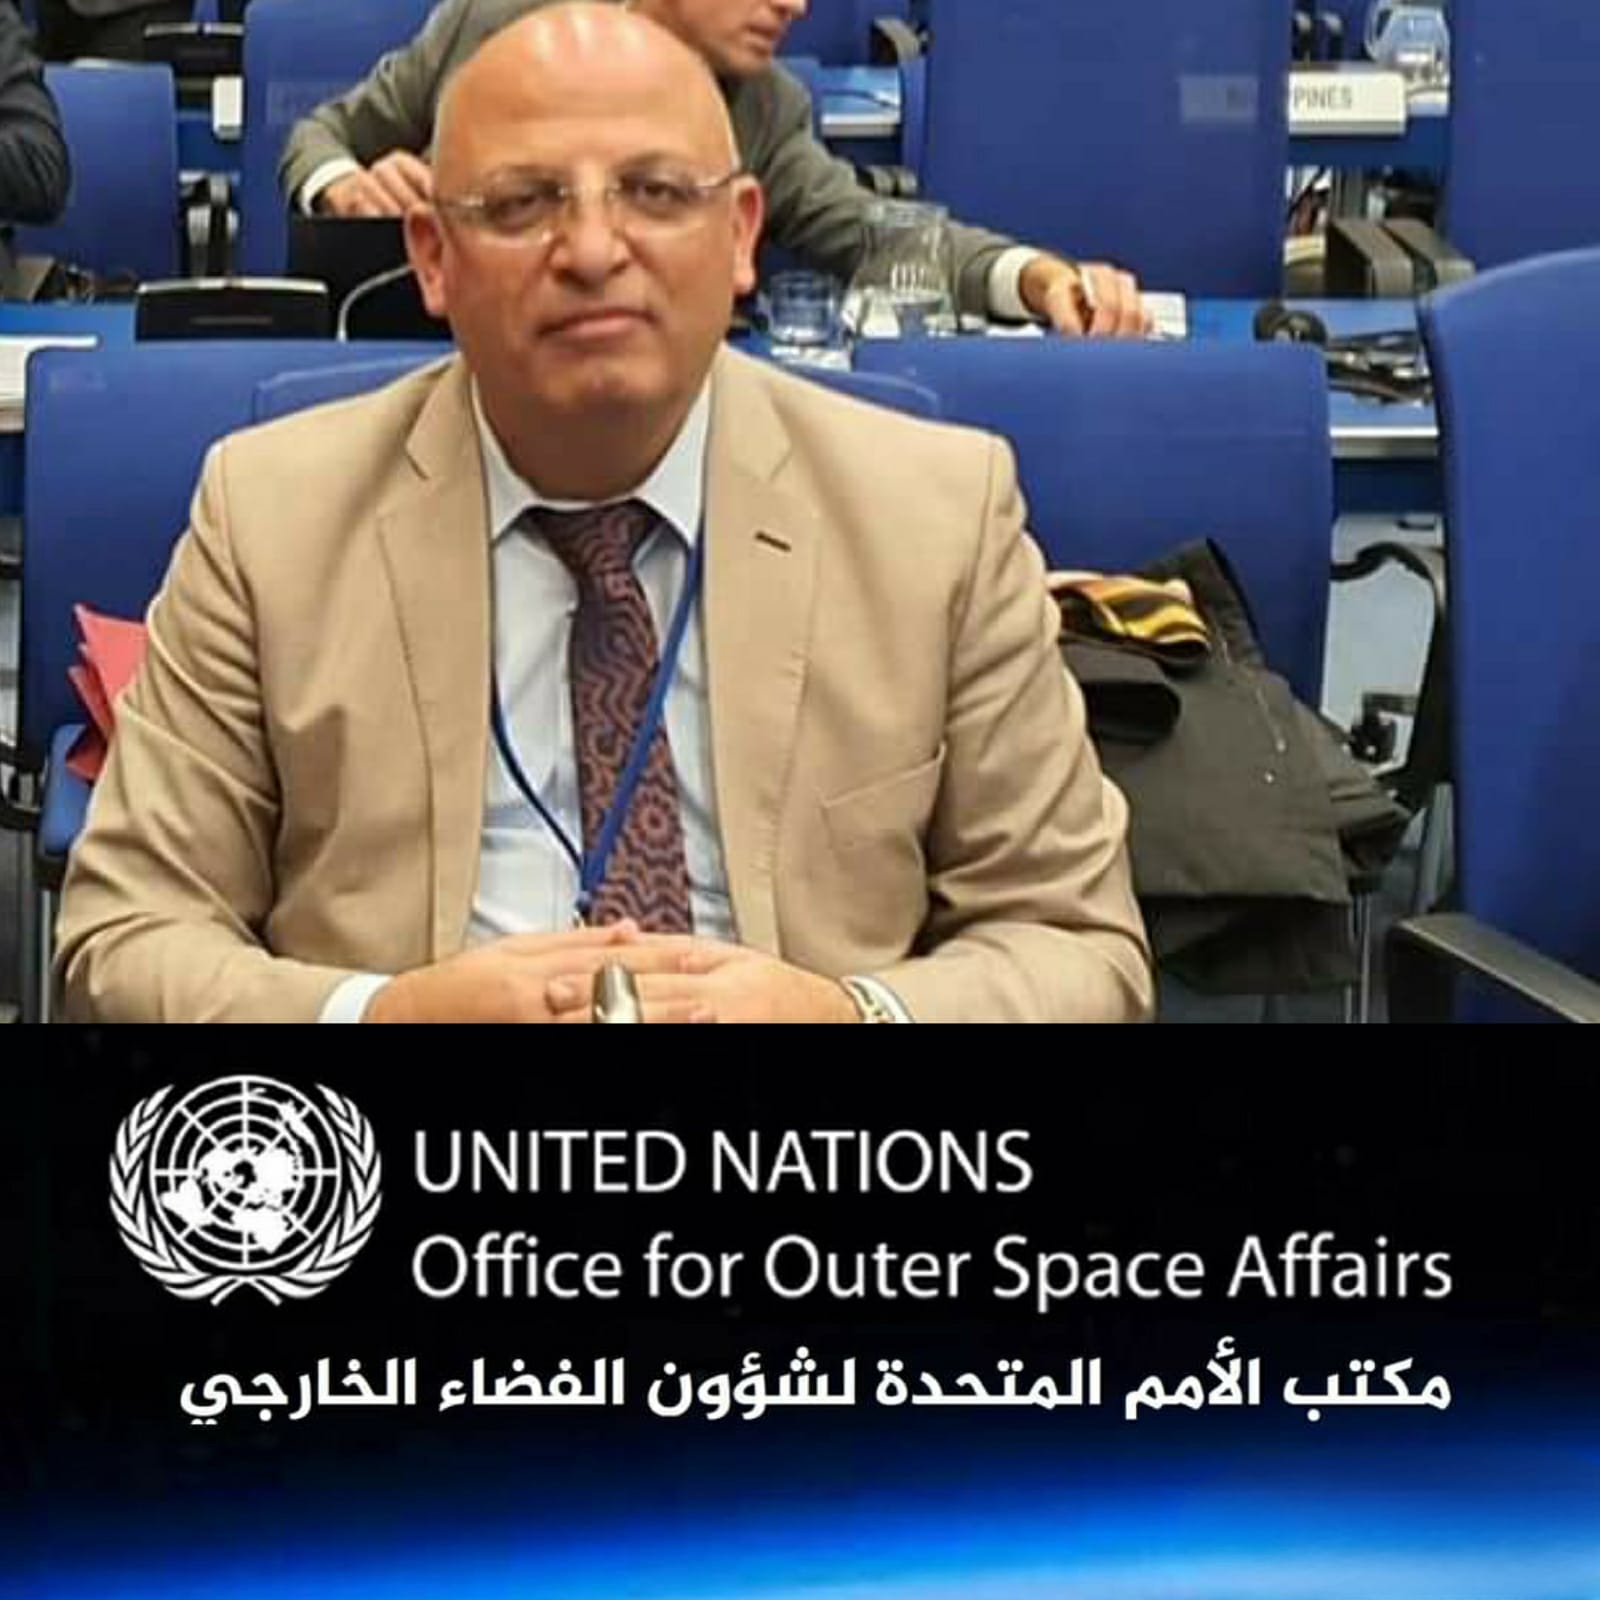 الأردن يشارك في اجتماعات اللجنه الفرعية العلمية والتقنية التابعة للجنة الامم المتحدة للاستخدام السلمي للفضاء الخارجي 